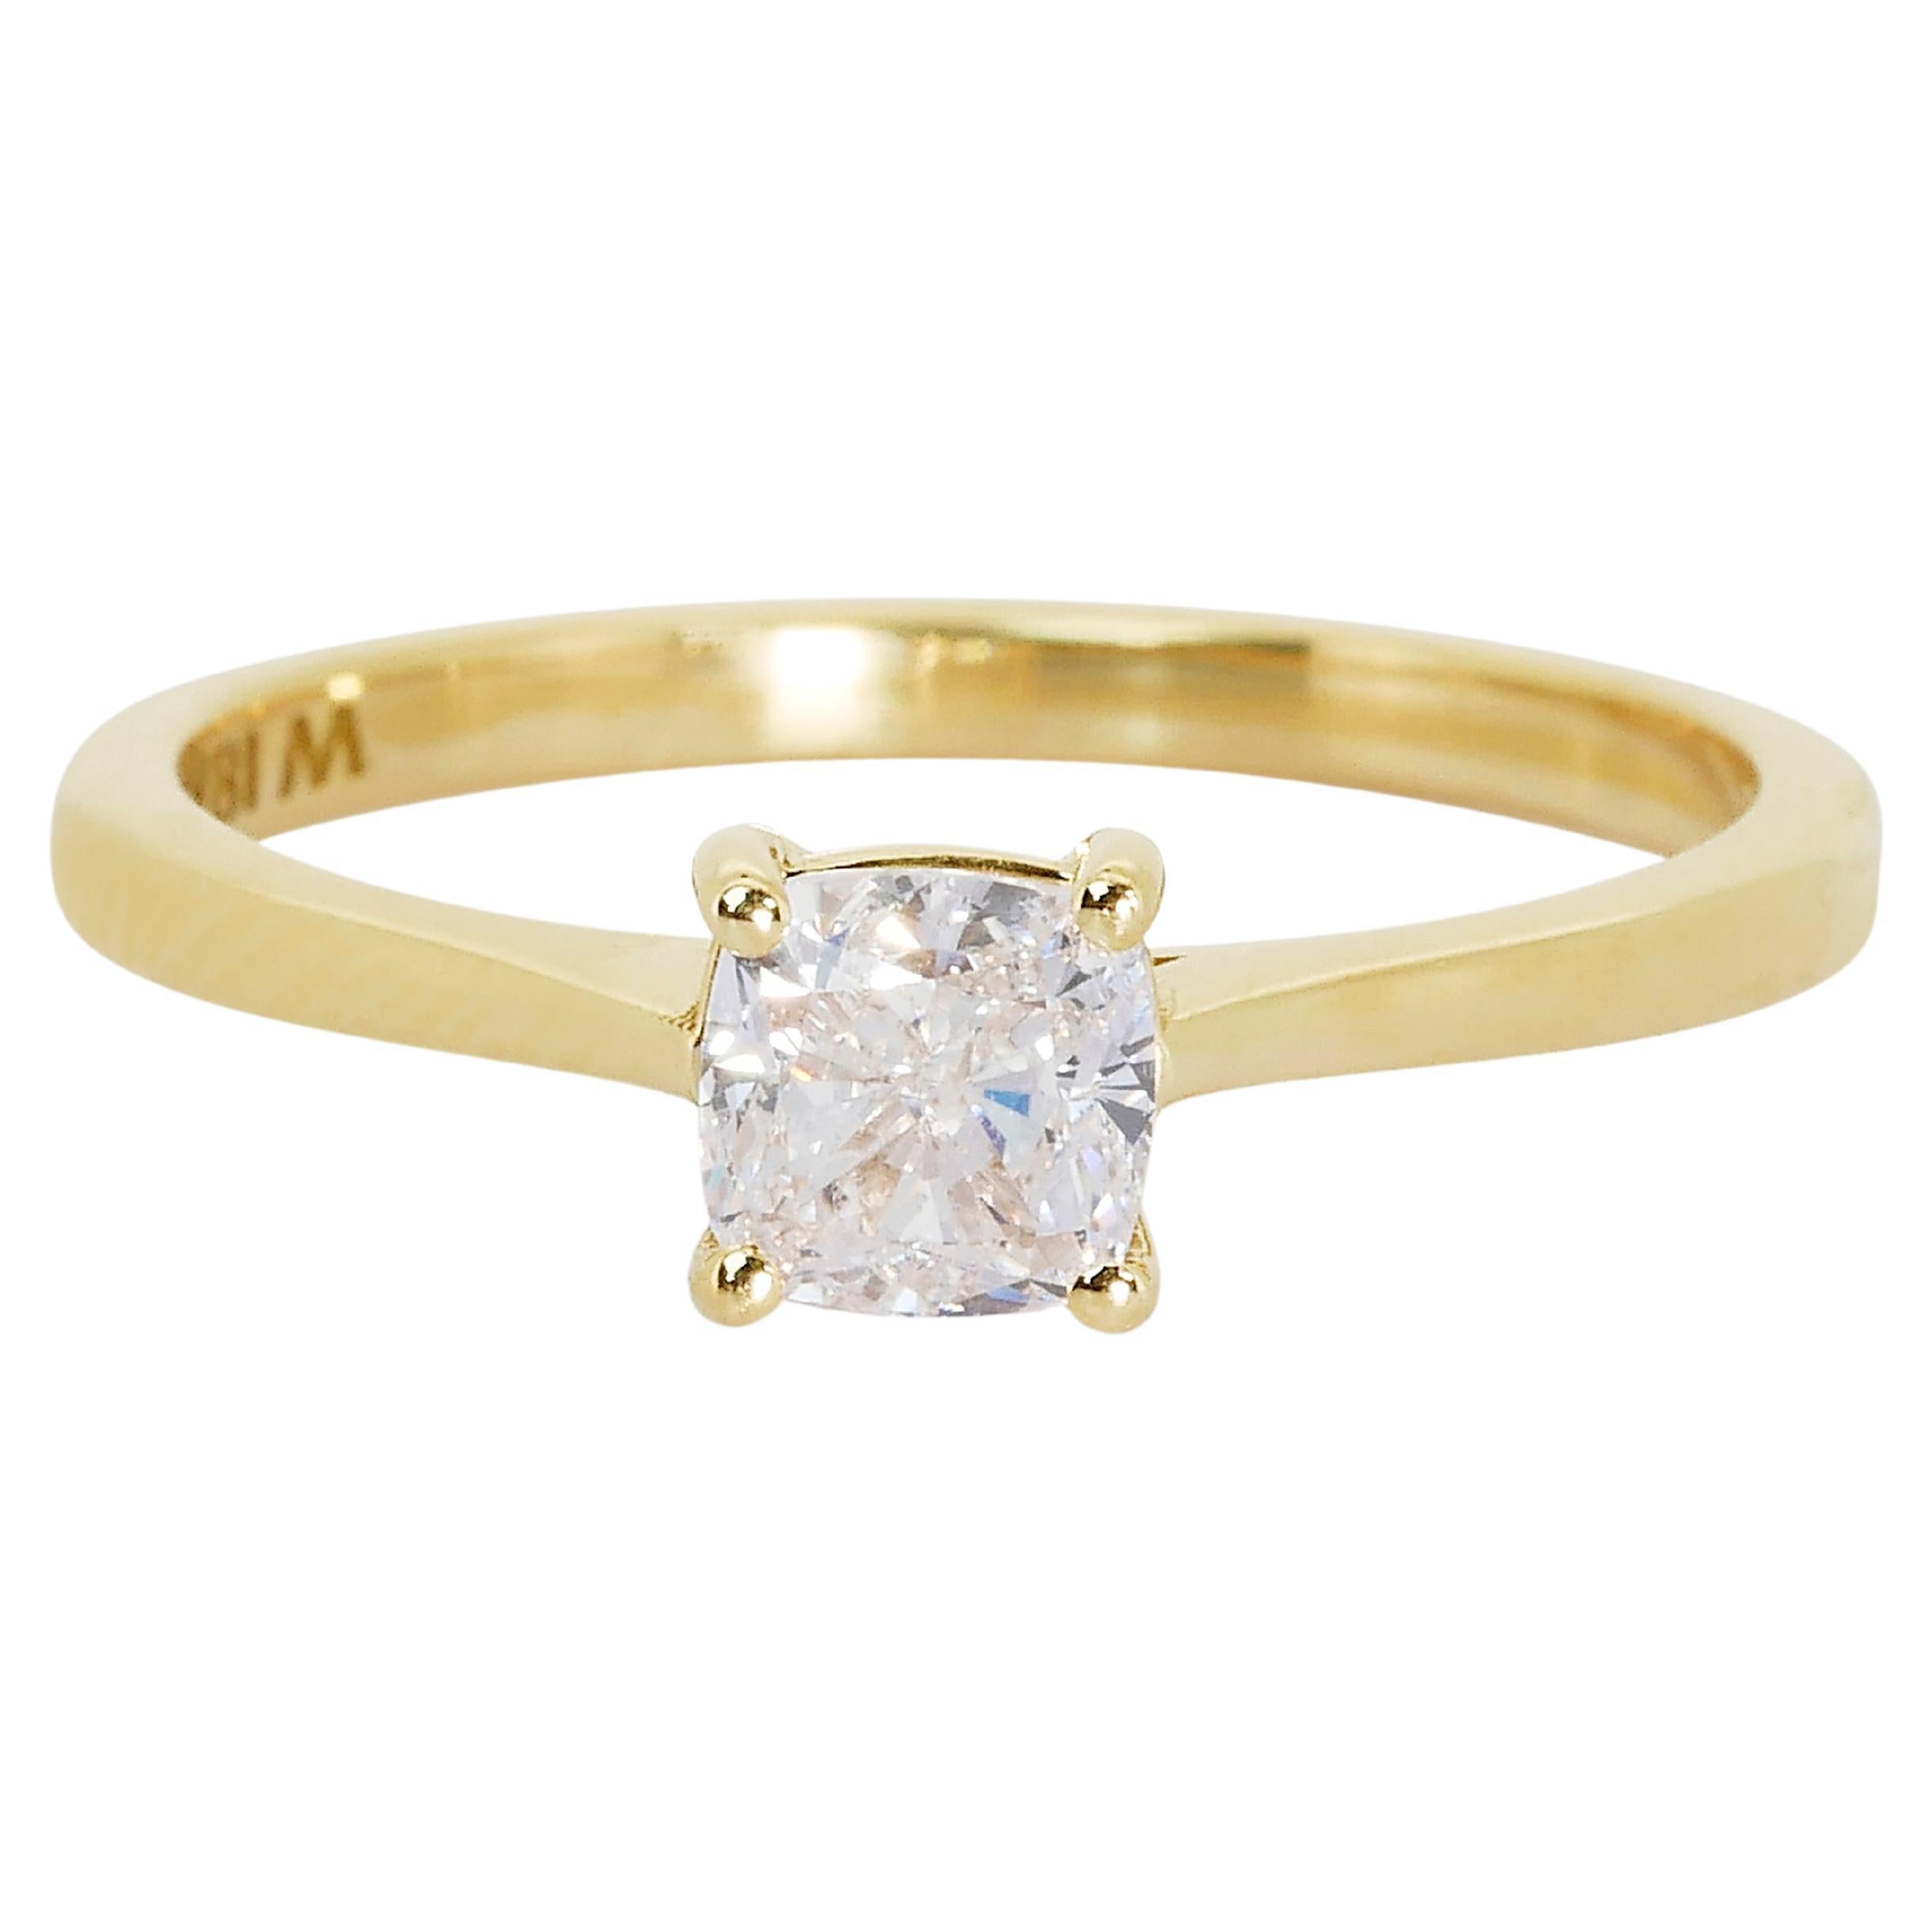 Bague solitaire glamour en or jaune 18 carats avec diamants naturels de 0,7 carat certifiés AIG